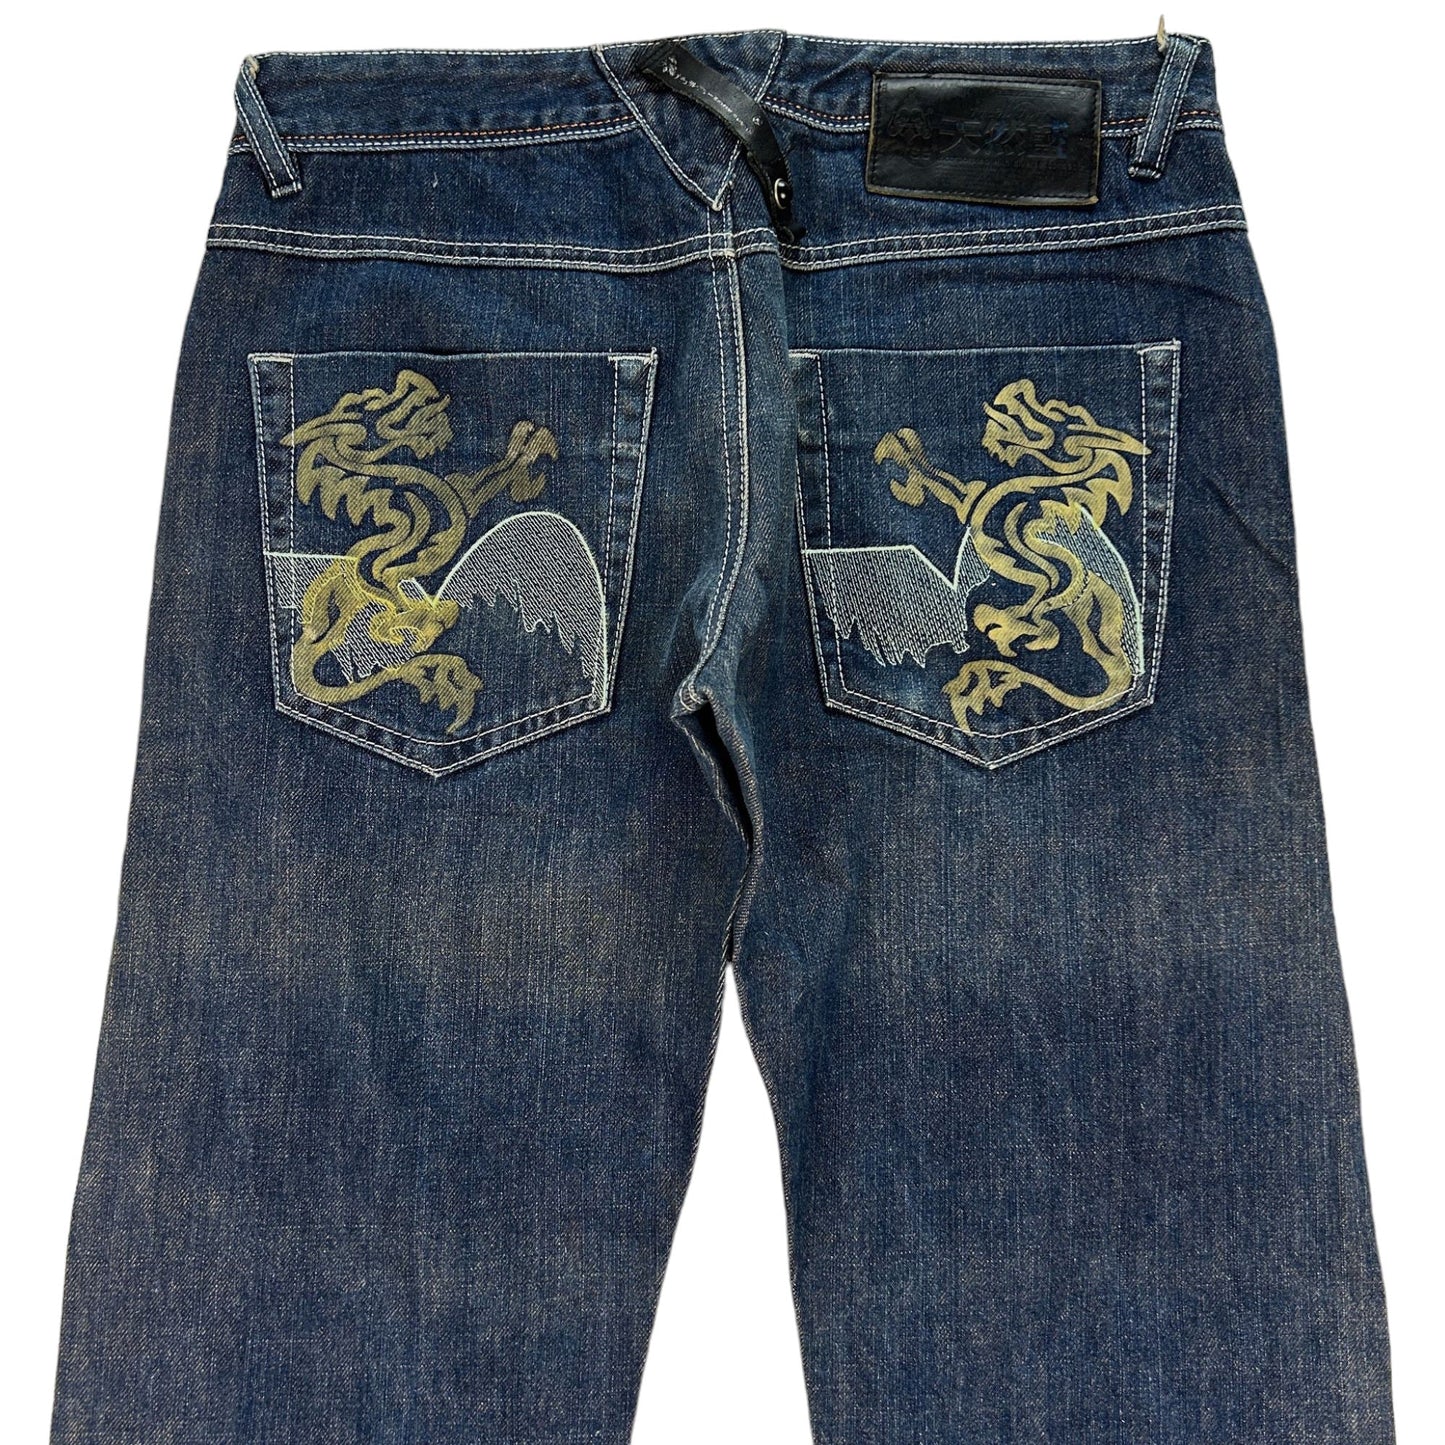 Vintage Dragon Denim Jeans Size W31